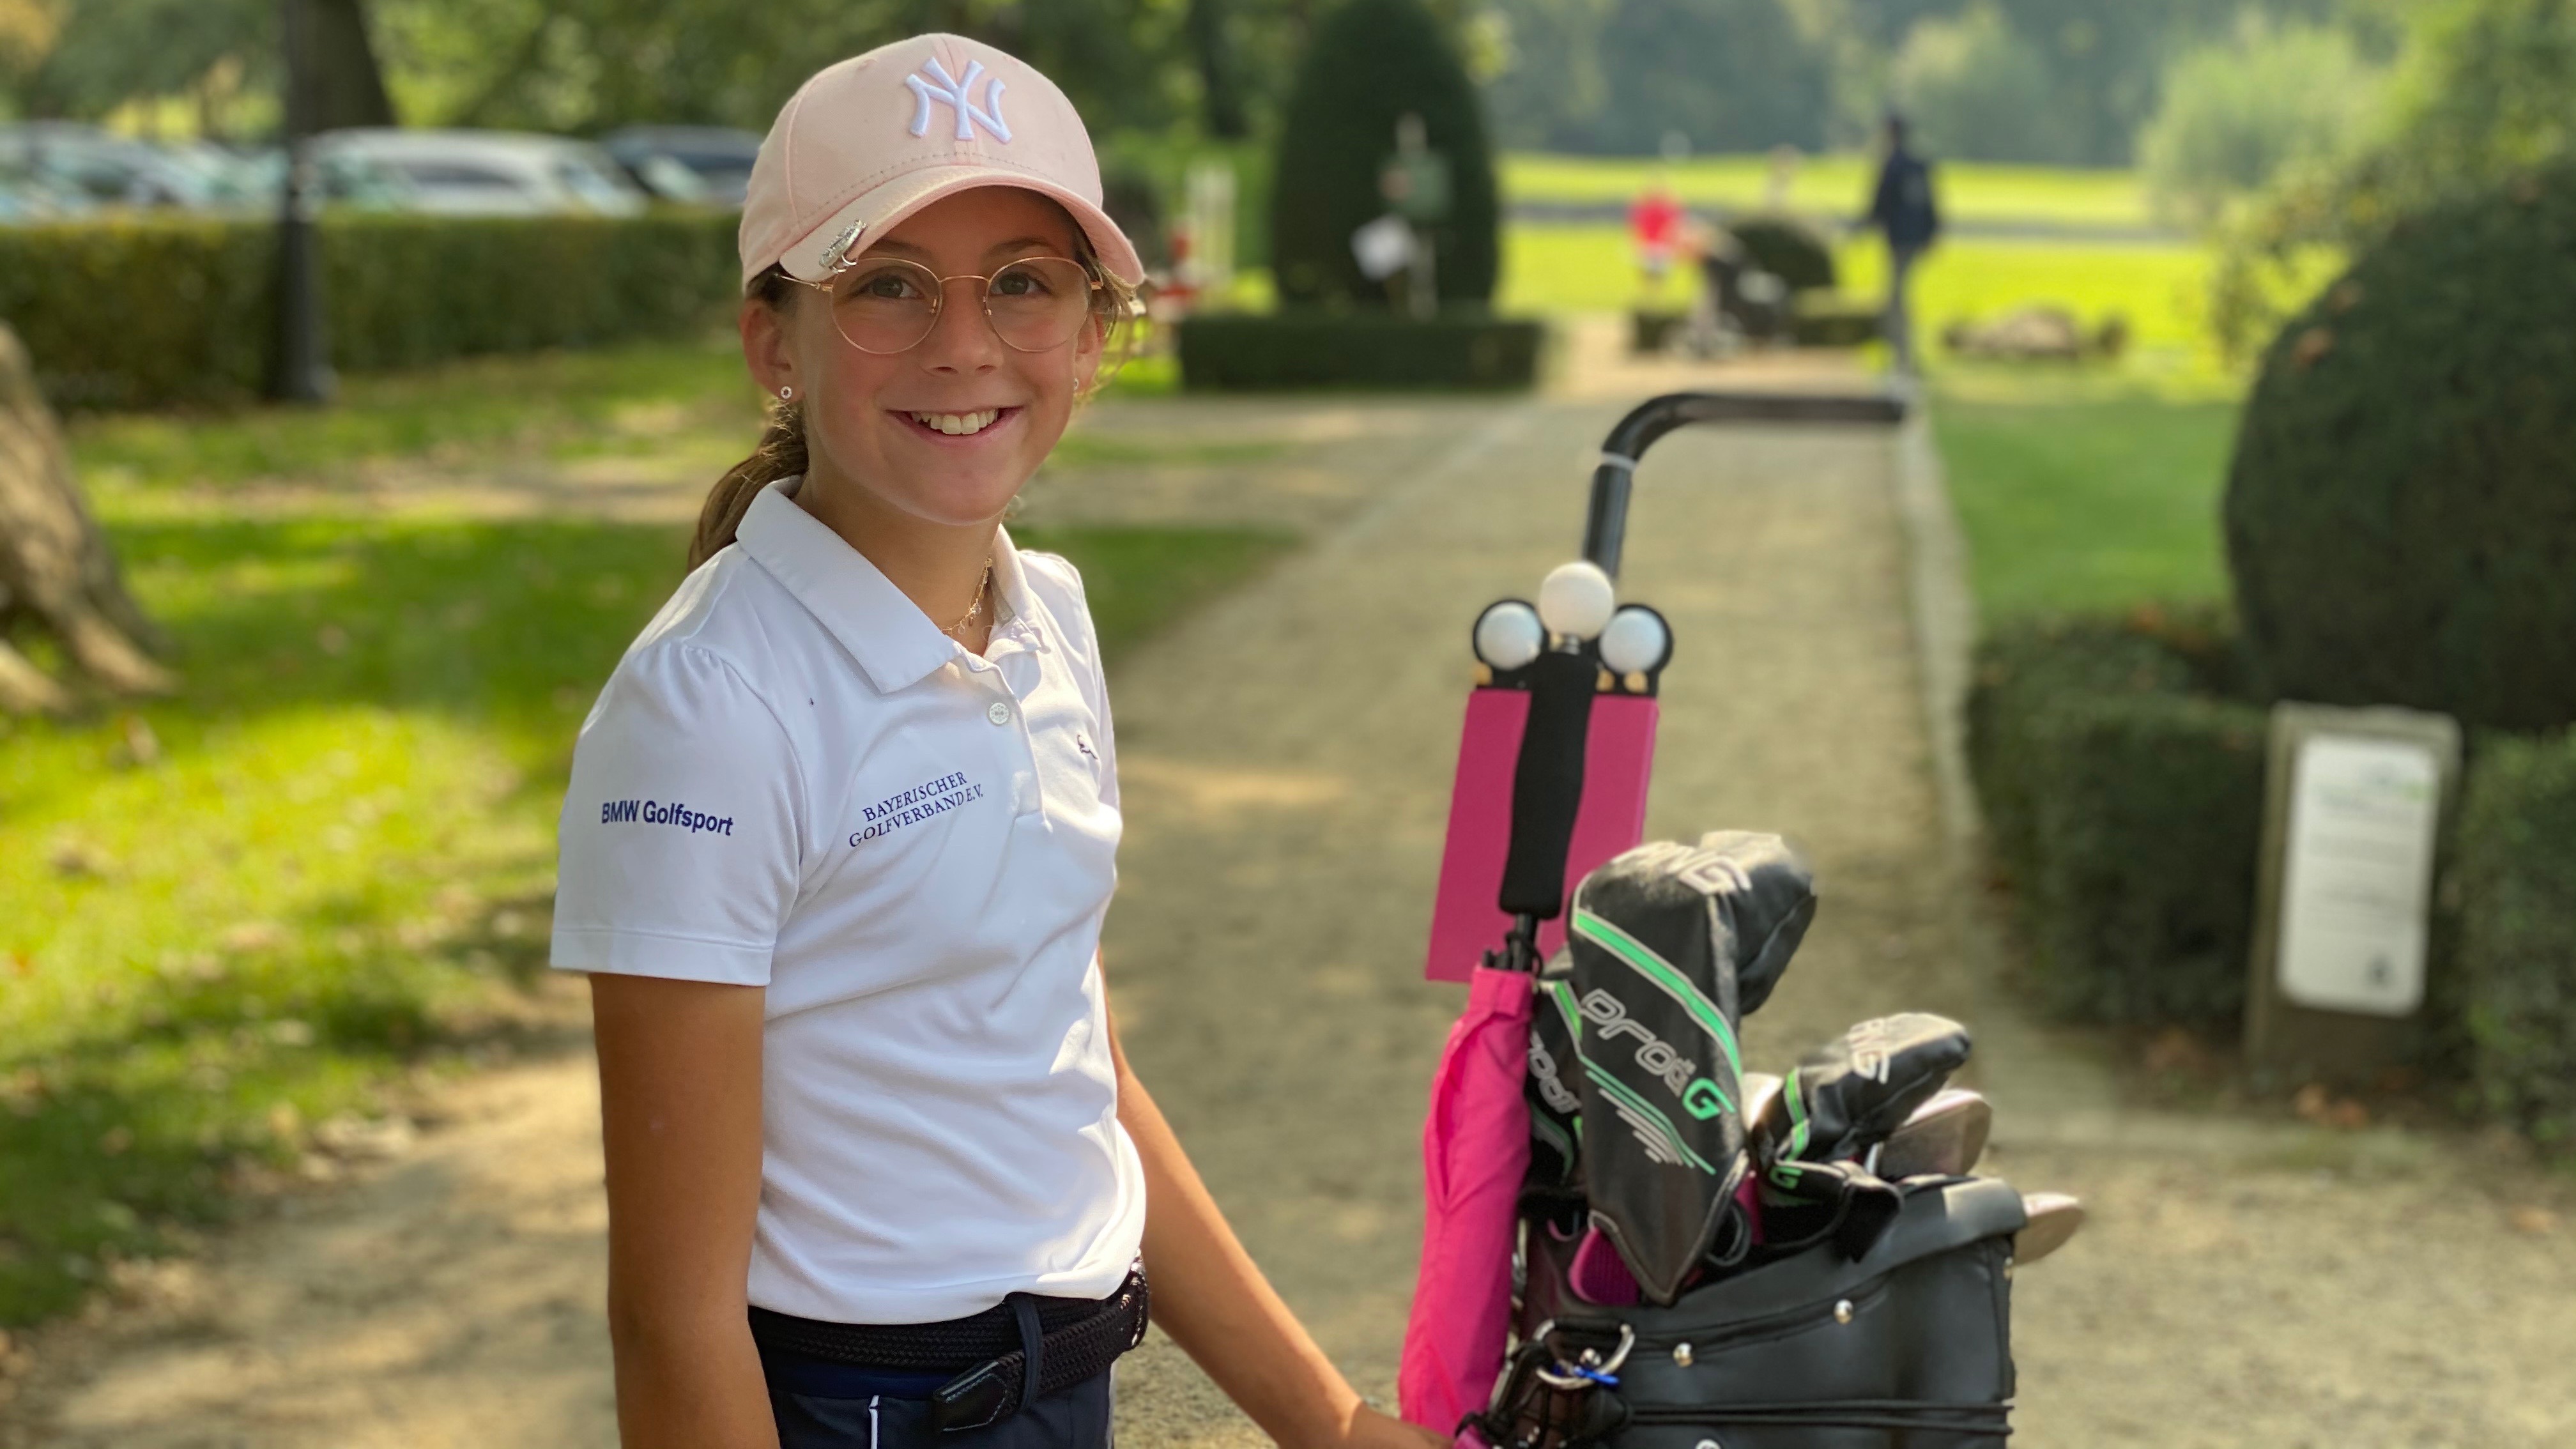 Mit viel Freude und Leidenschaft: Lena Geier, 12 Jahre, möchte auf die große Tour. Die Voraussetzungen passen – niemand hatte in so jungen Jahren ein Handicap von 0,0.